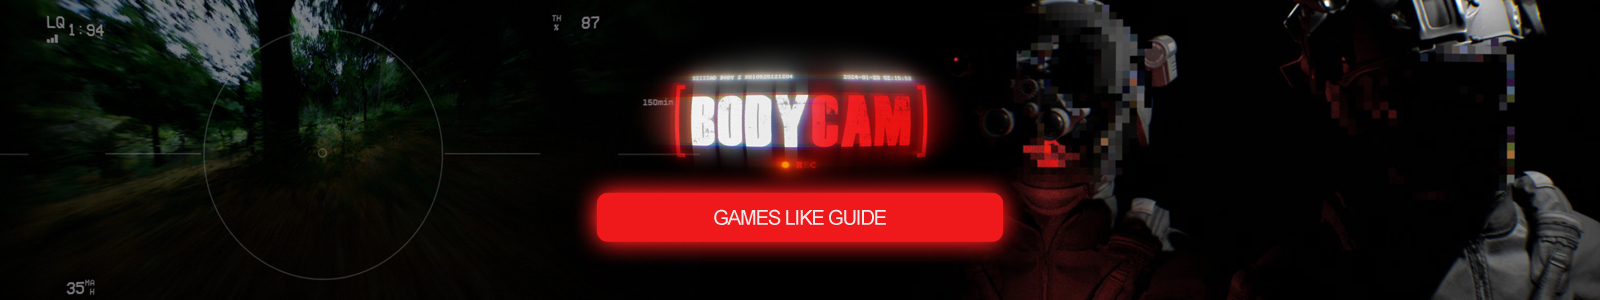 Bodycam Spiele wie Anleitung